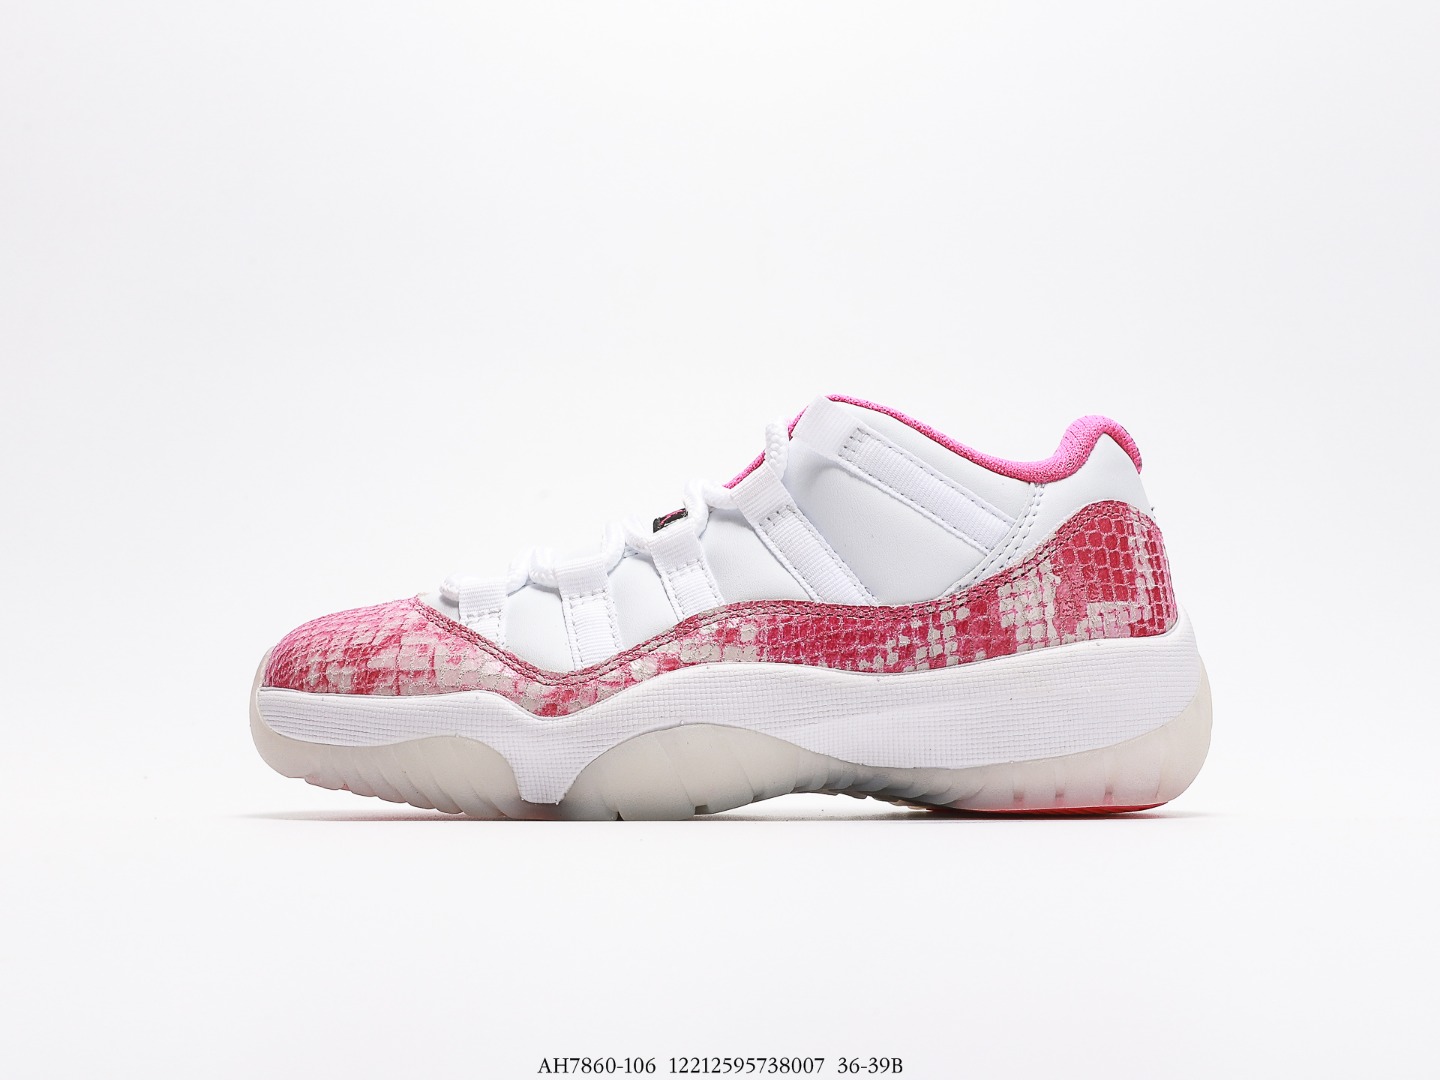 Air Jordan AJ11 Retro Low (en inglés)
Pink Snakeskin (2019) AH7860-106